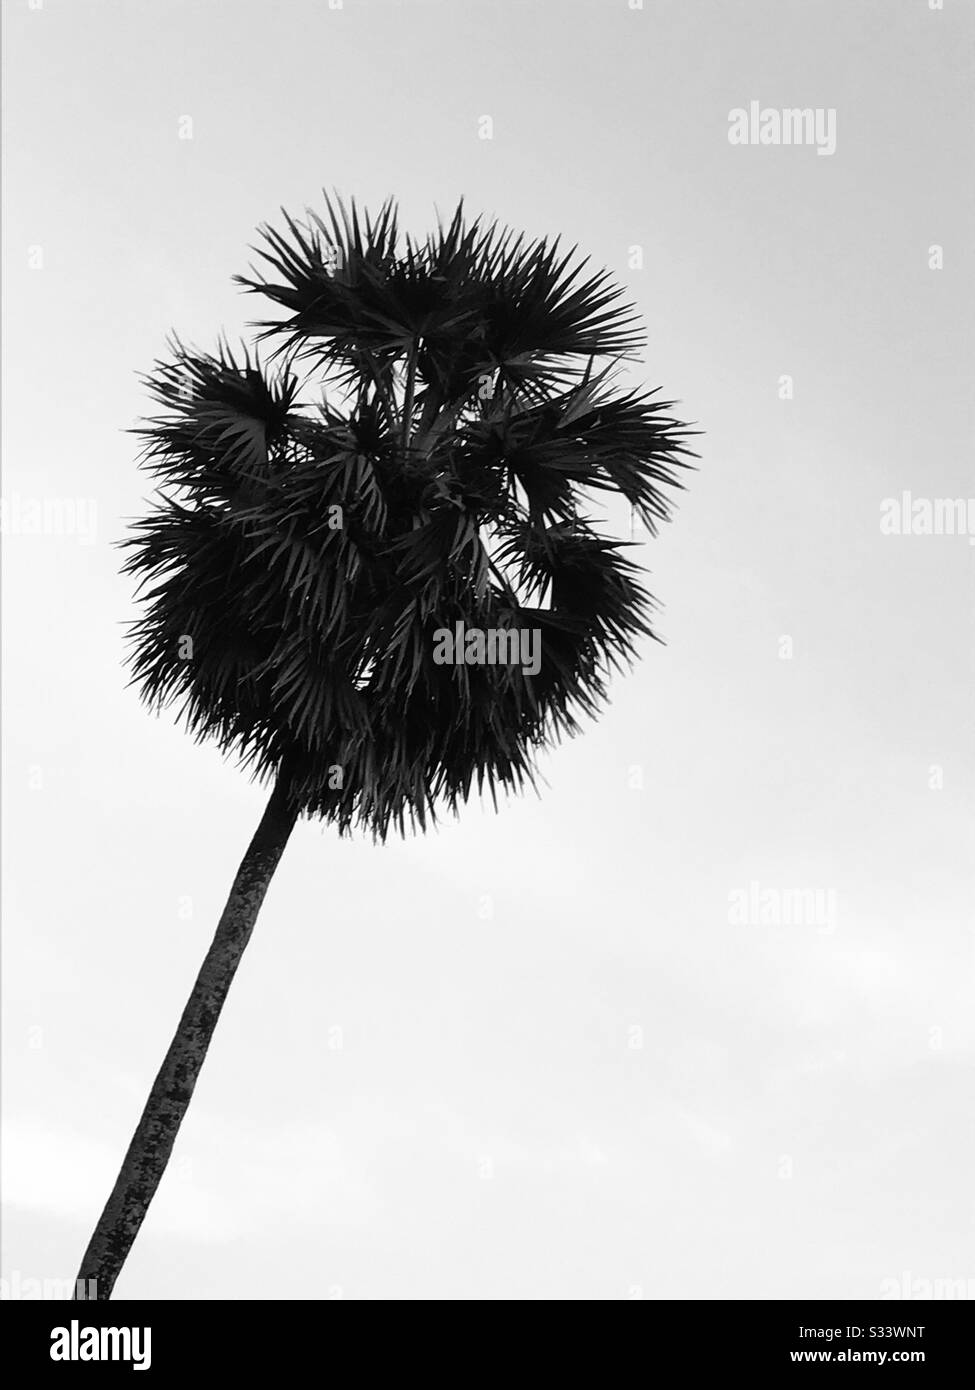 Un albero di palma alto singolo trovato vicino alla mia casa nella mia città natale in India - bevanda indiana Toddy & frutta giovane di palma sono commestibile- modalità in bianco e nero Foto Stock